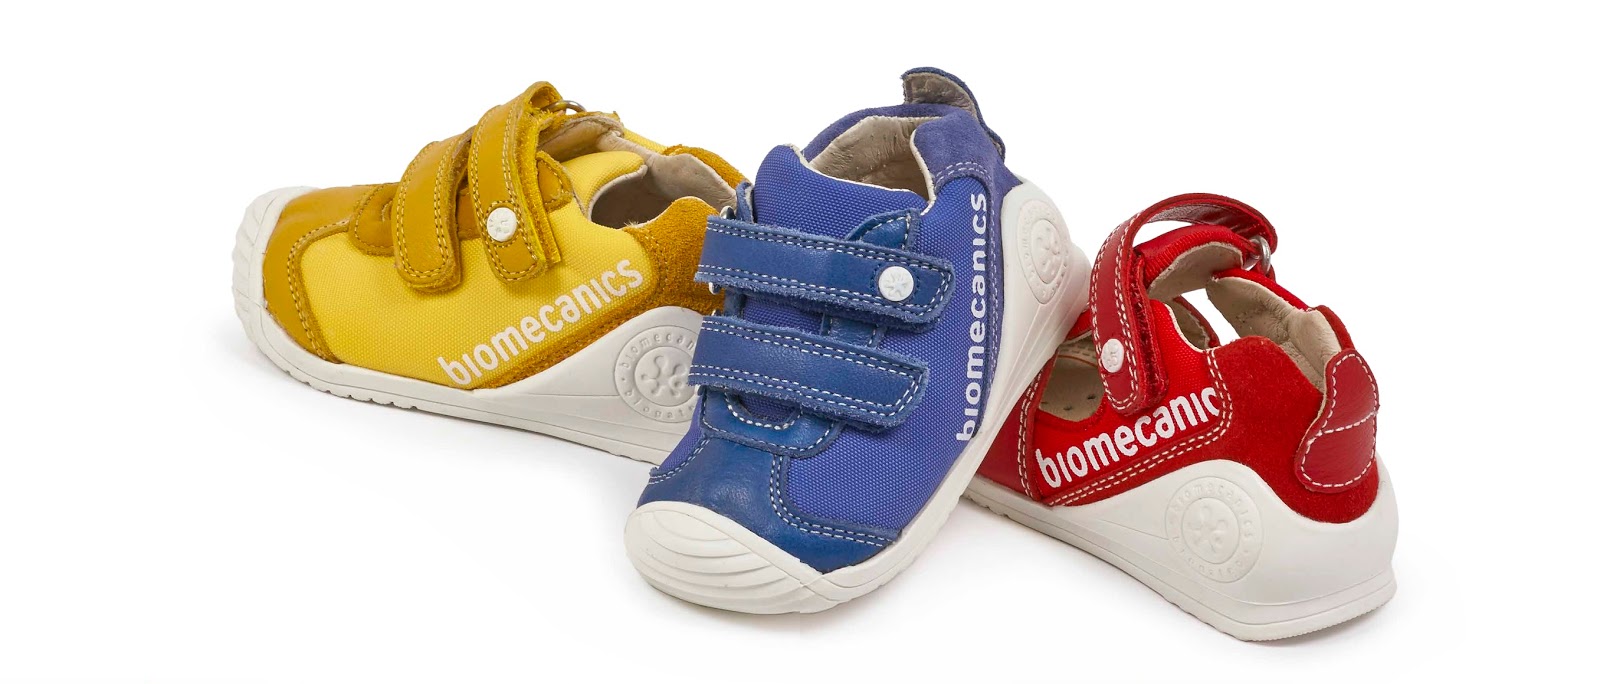 biomecanics scarpe bambini